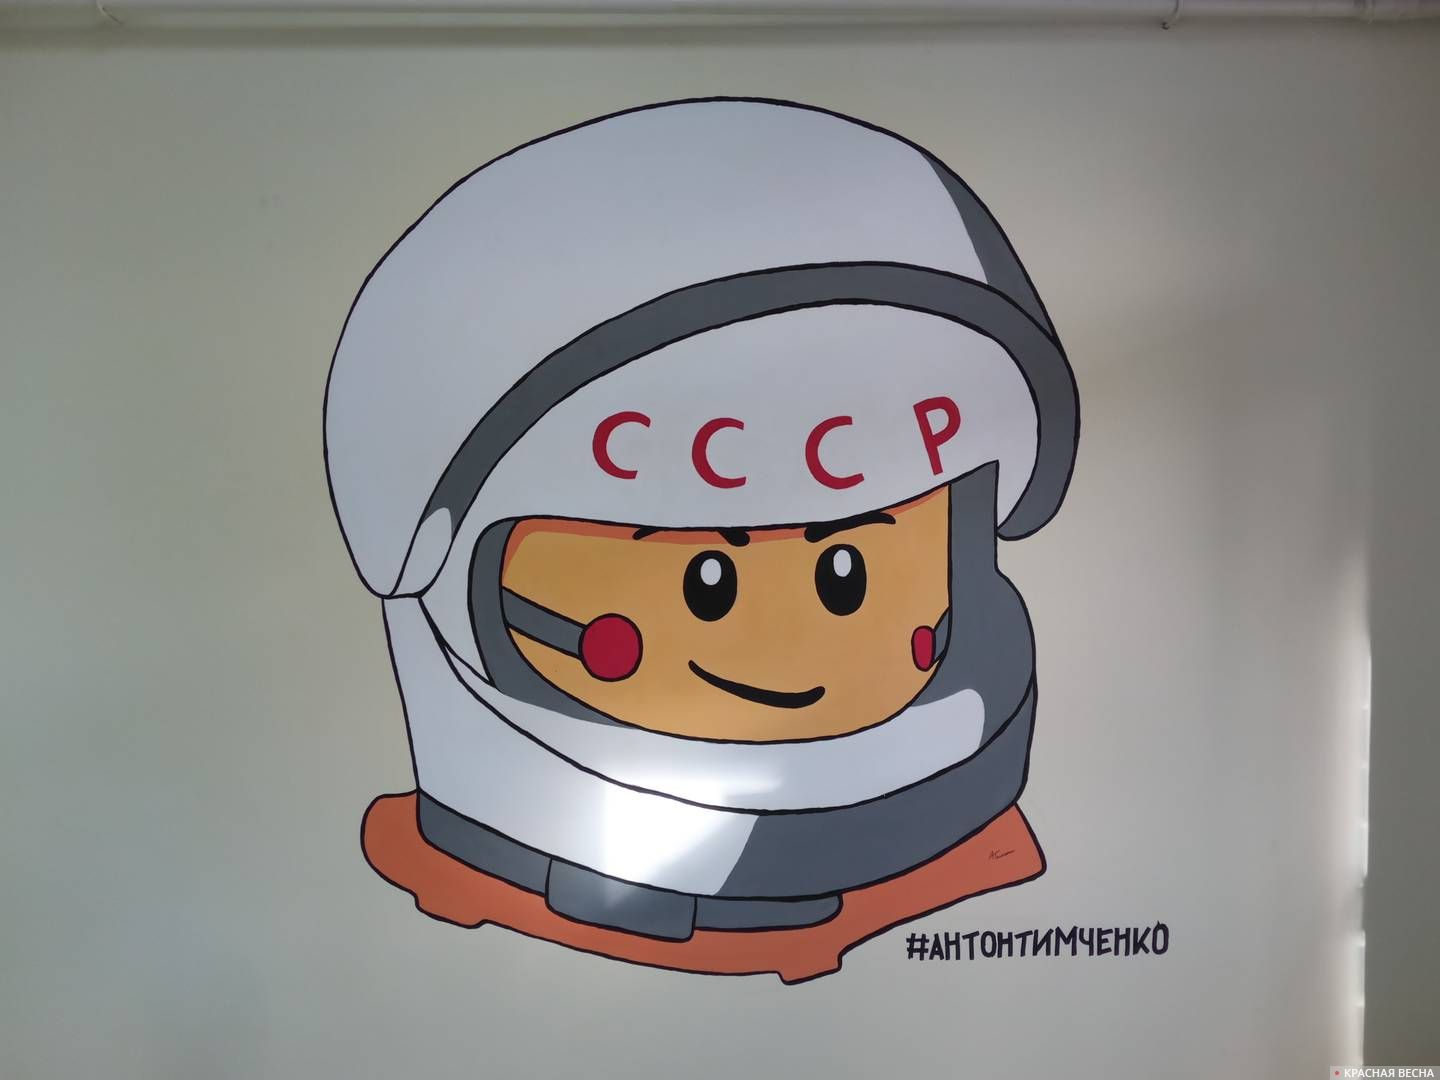 Юрий Гагарин в образе лего-человечка